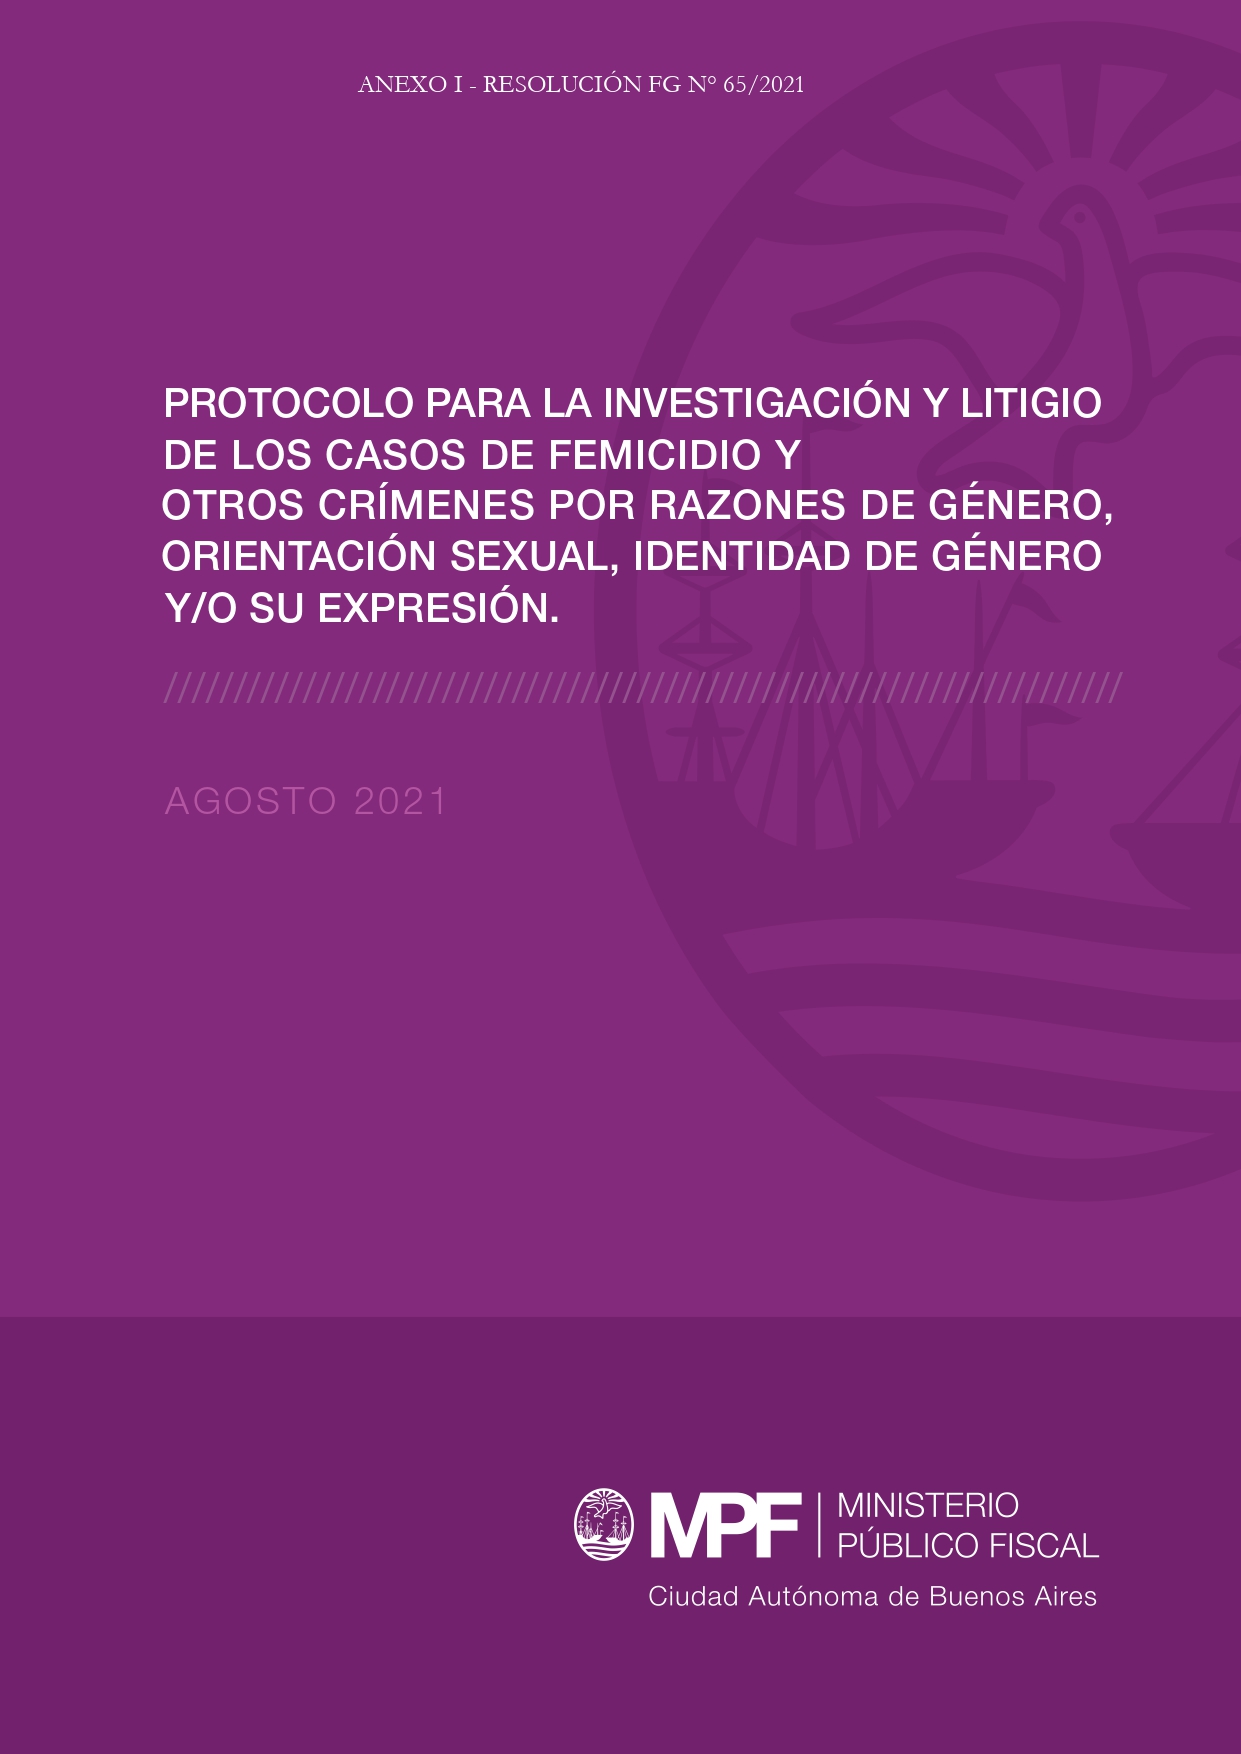 Protocolo para la investigación y litigio de los casos de femicidio y otros crímenes por razones de género, orientación sexual, identidad de género y/o su expresión CABA